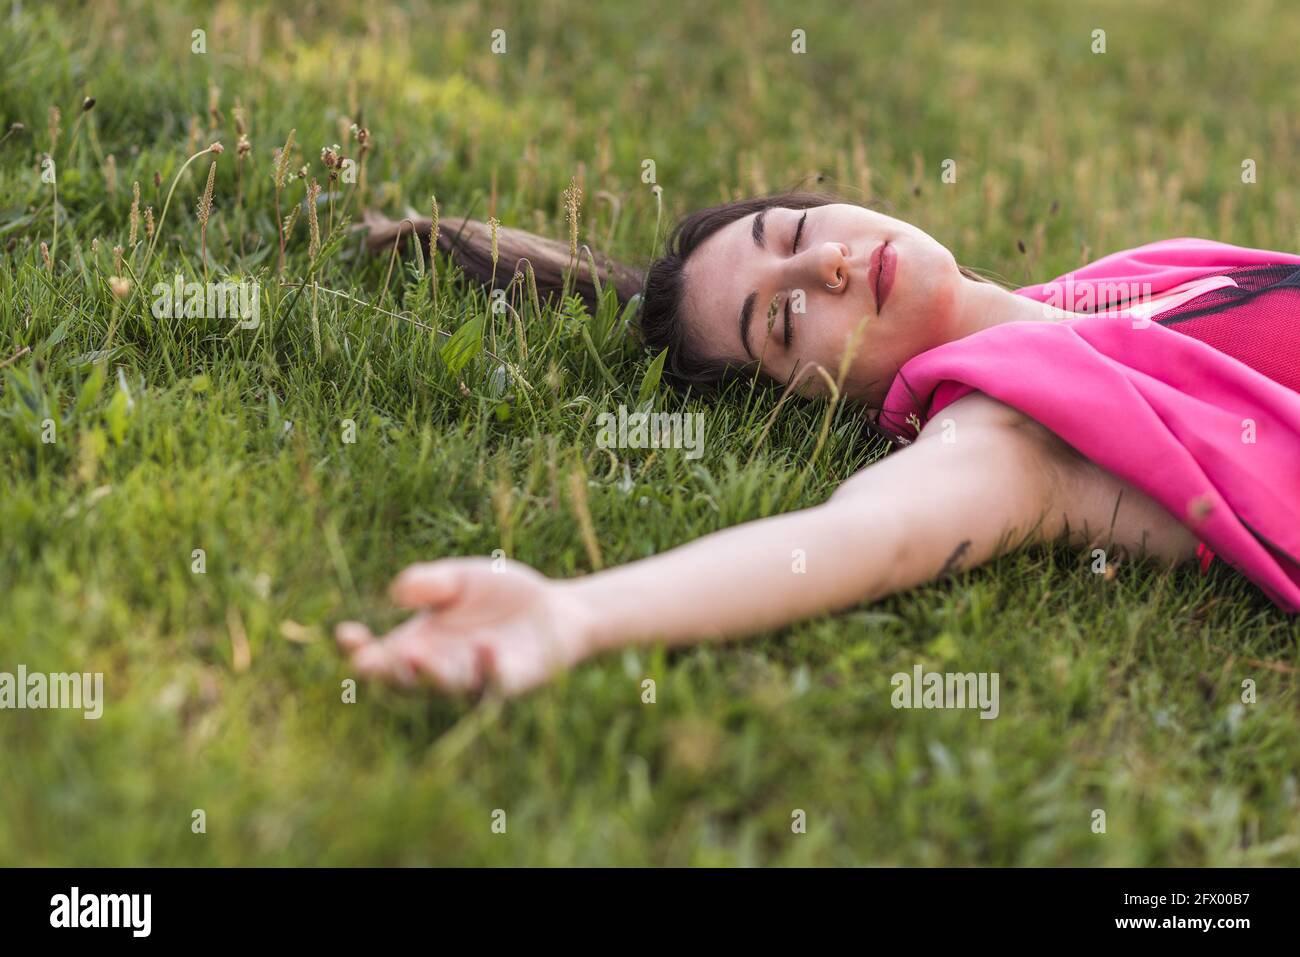 Attraktive kaukasische Frau, die mit geschlossenen Augen auf dem Gras liegt Stockfoto